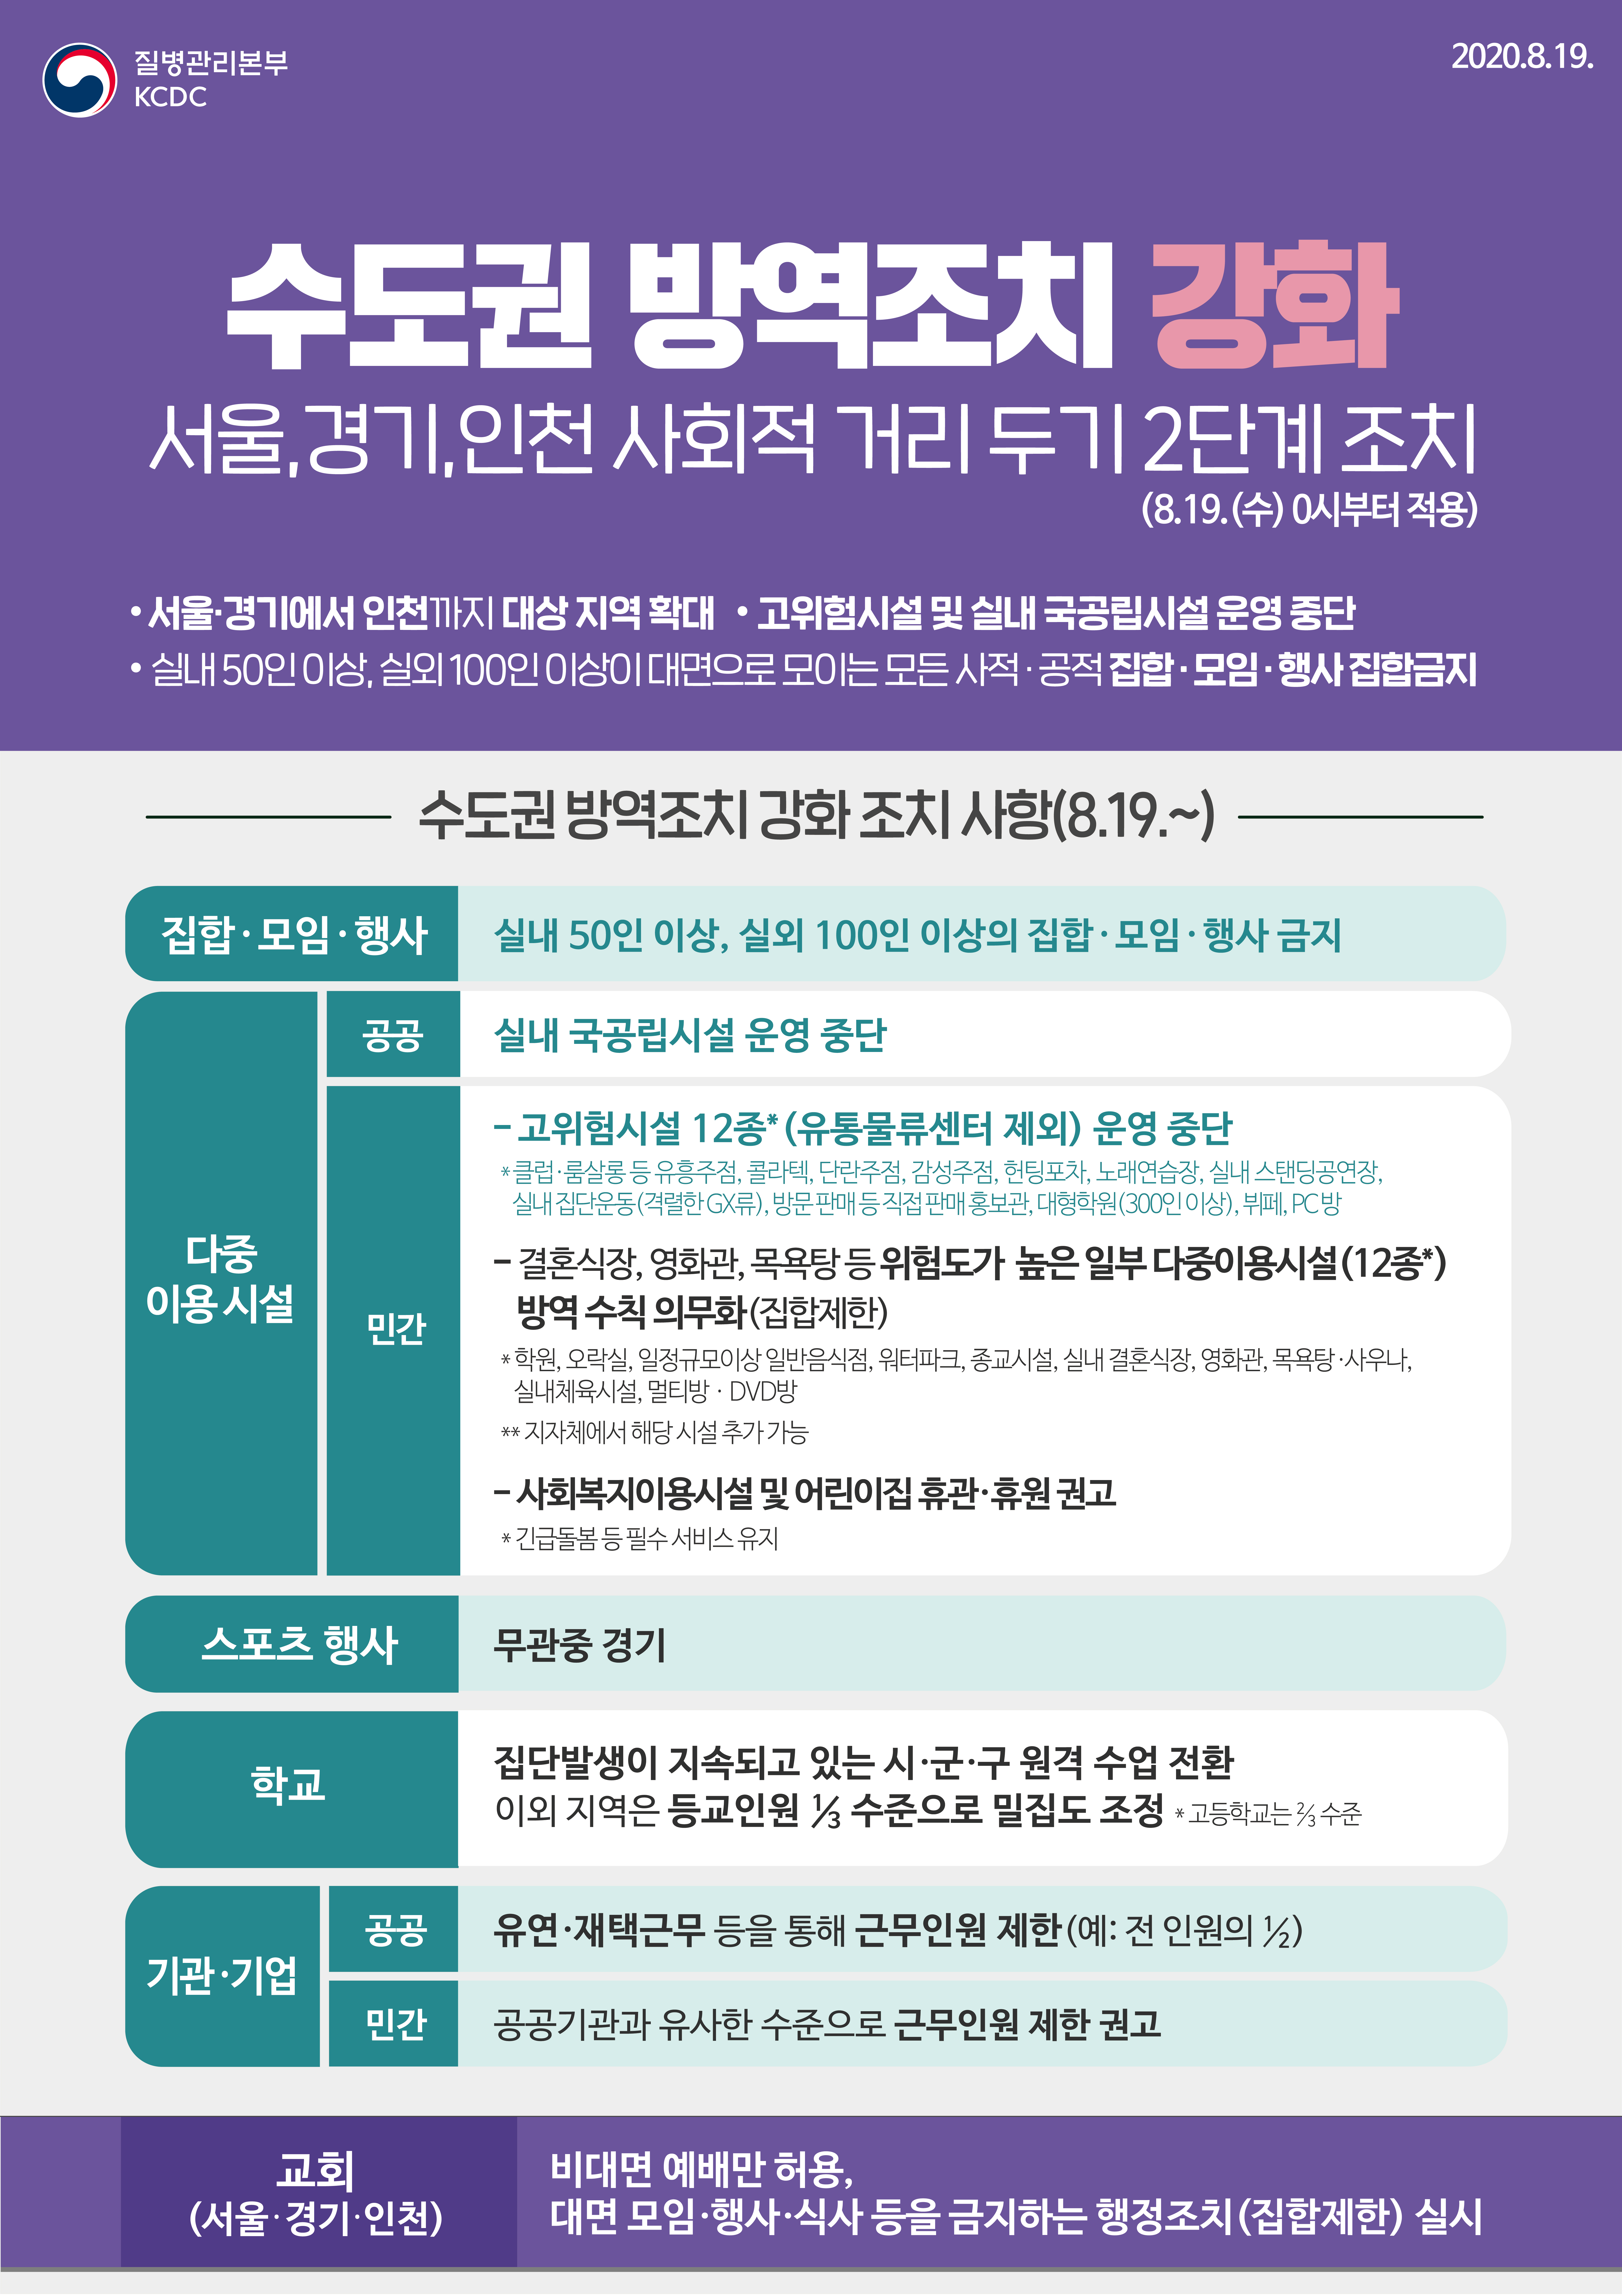 (통합본)수도권 방역조치 강화, 서울·경기·인천 사회적 거리 두기 2단계 조치